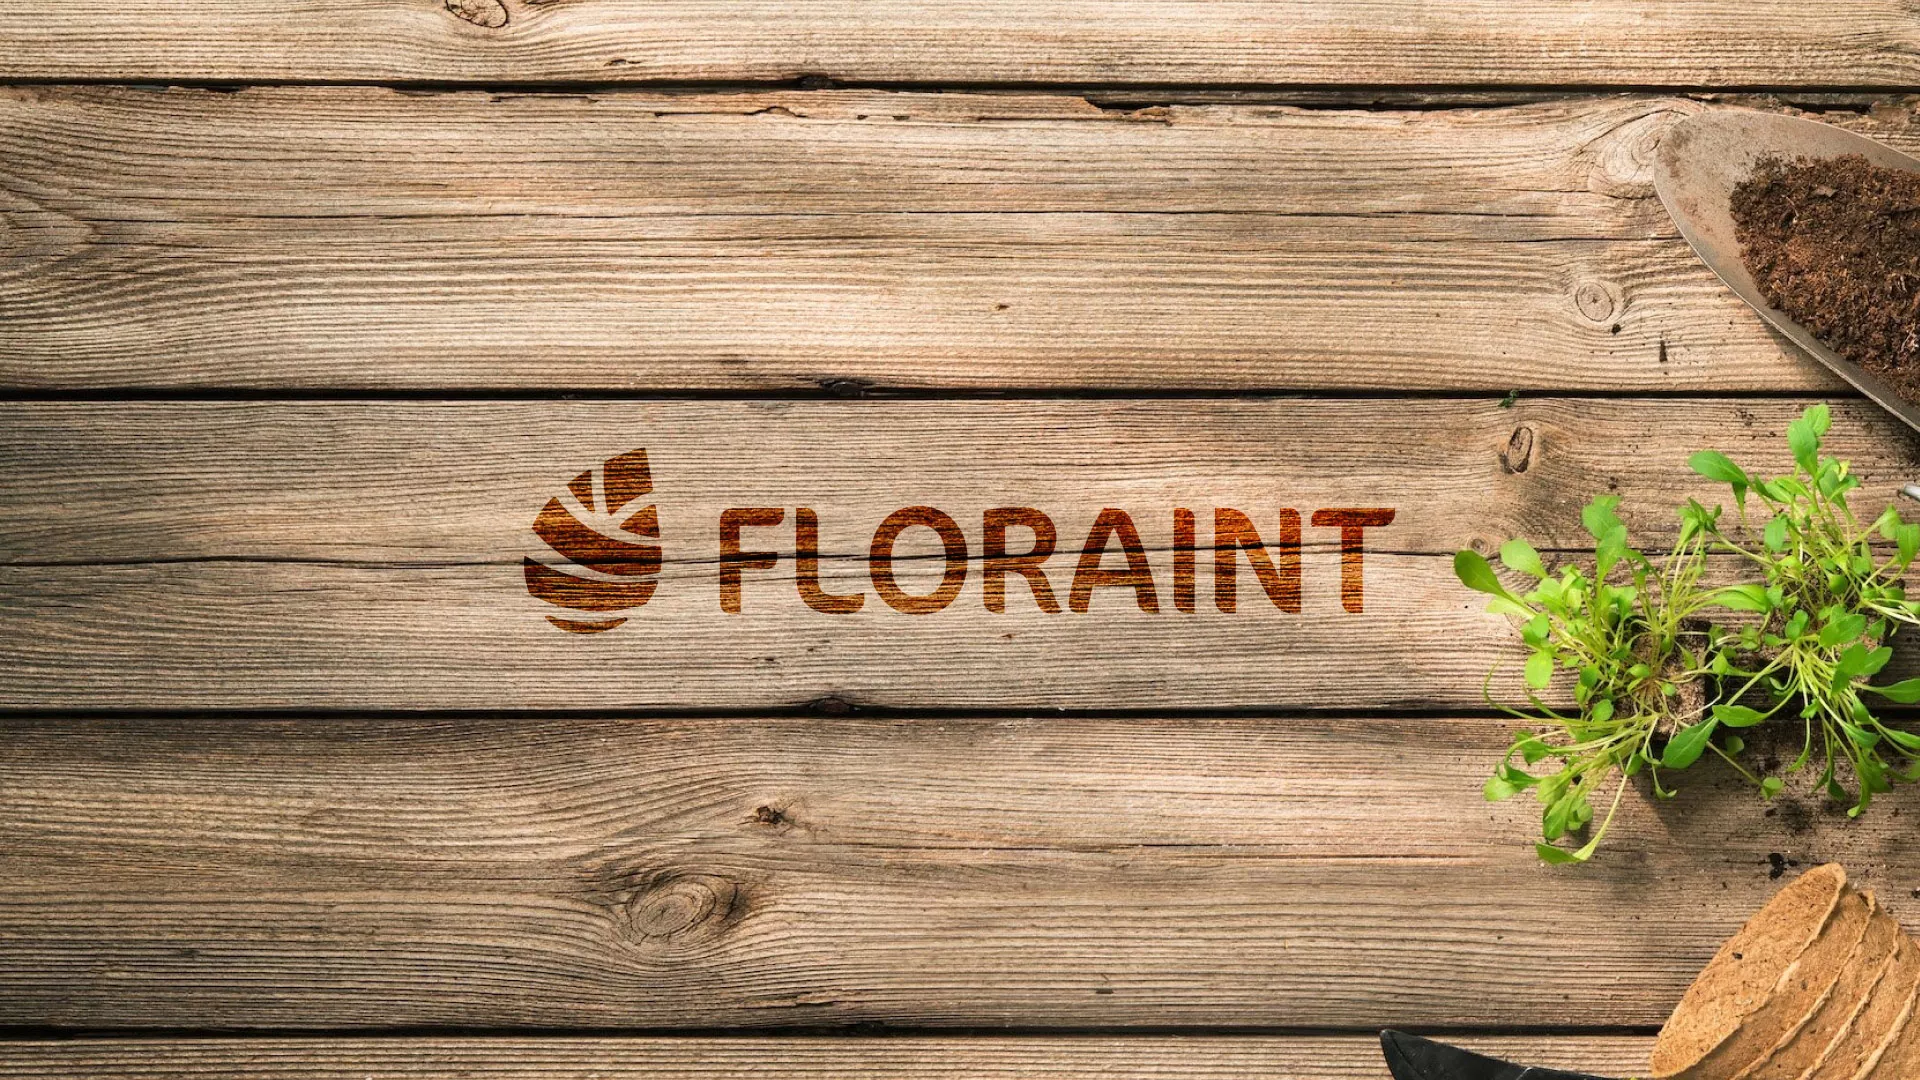 Создание логотипа и интернет-магазина «FLORAINT» в Николаевске-на-Амуре